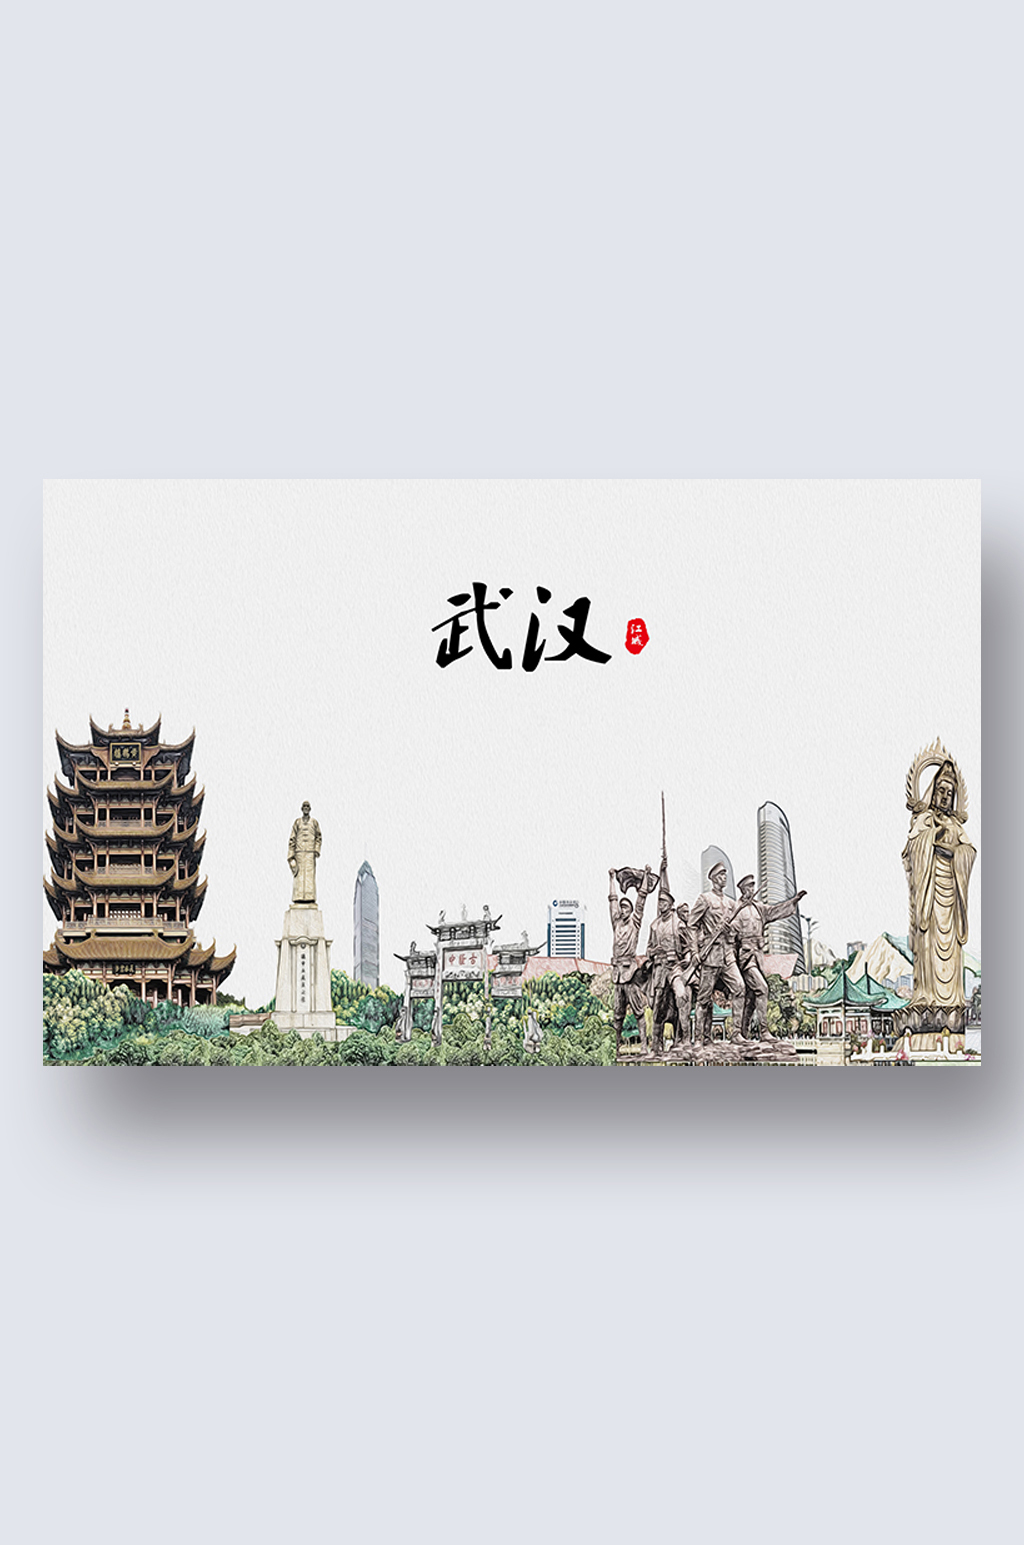 武汉城市地标建筑剪影插画素材